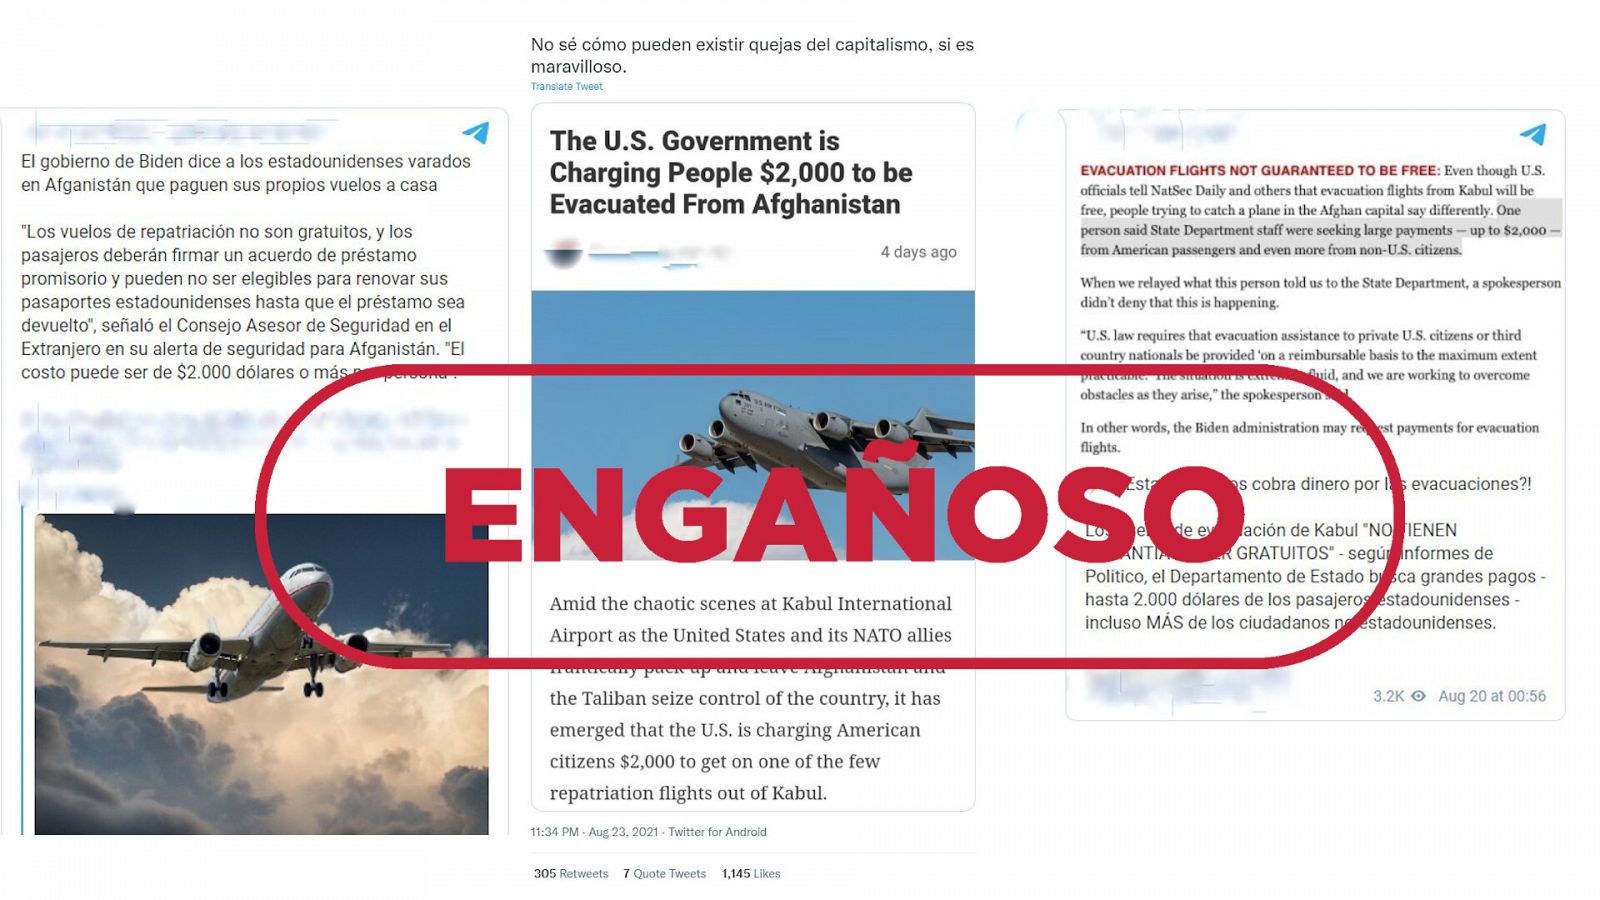 Mensajes de redes que dicen que Estados Unidos cobrará 2.000 euros a cada persona evacuada de Afganistán con el sello engañoso en rojo de VerificaRTVE